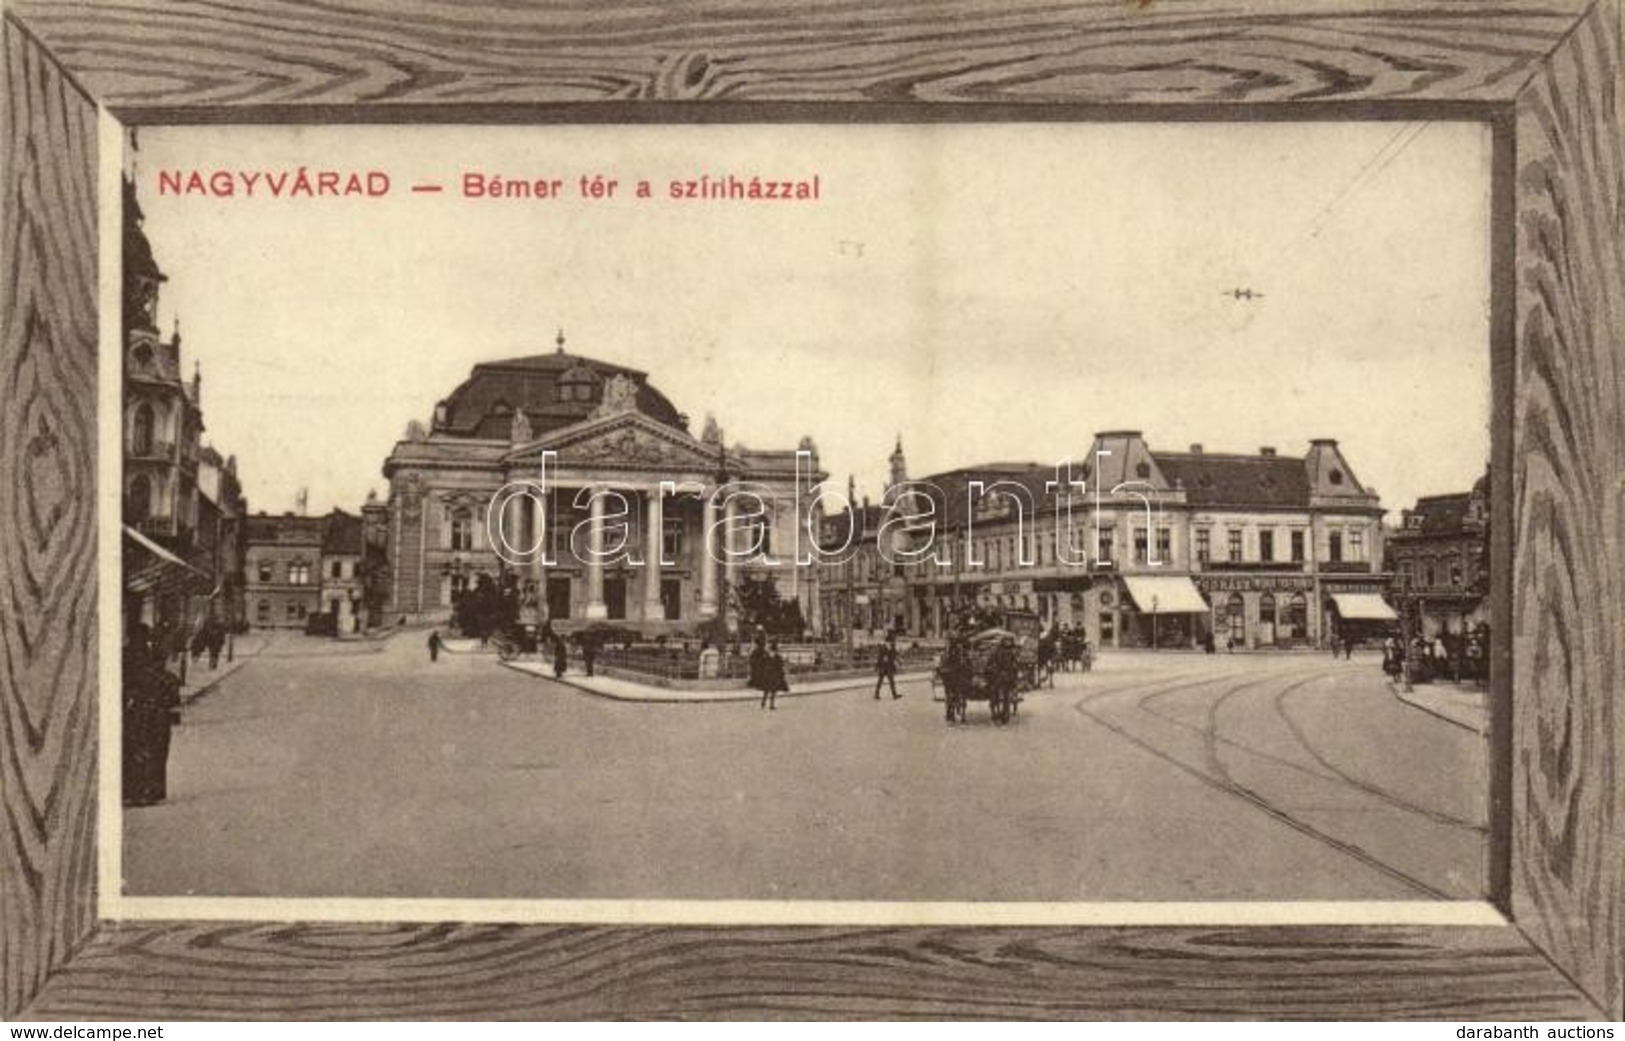 T2 1913 Nagyvárad, Oradea; Bémer Tér, Színház, Fodrász, Wéber Testvérek üzlete / Square, Theatre, Shops, Hairdresser Sal - Unclassified